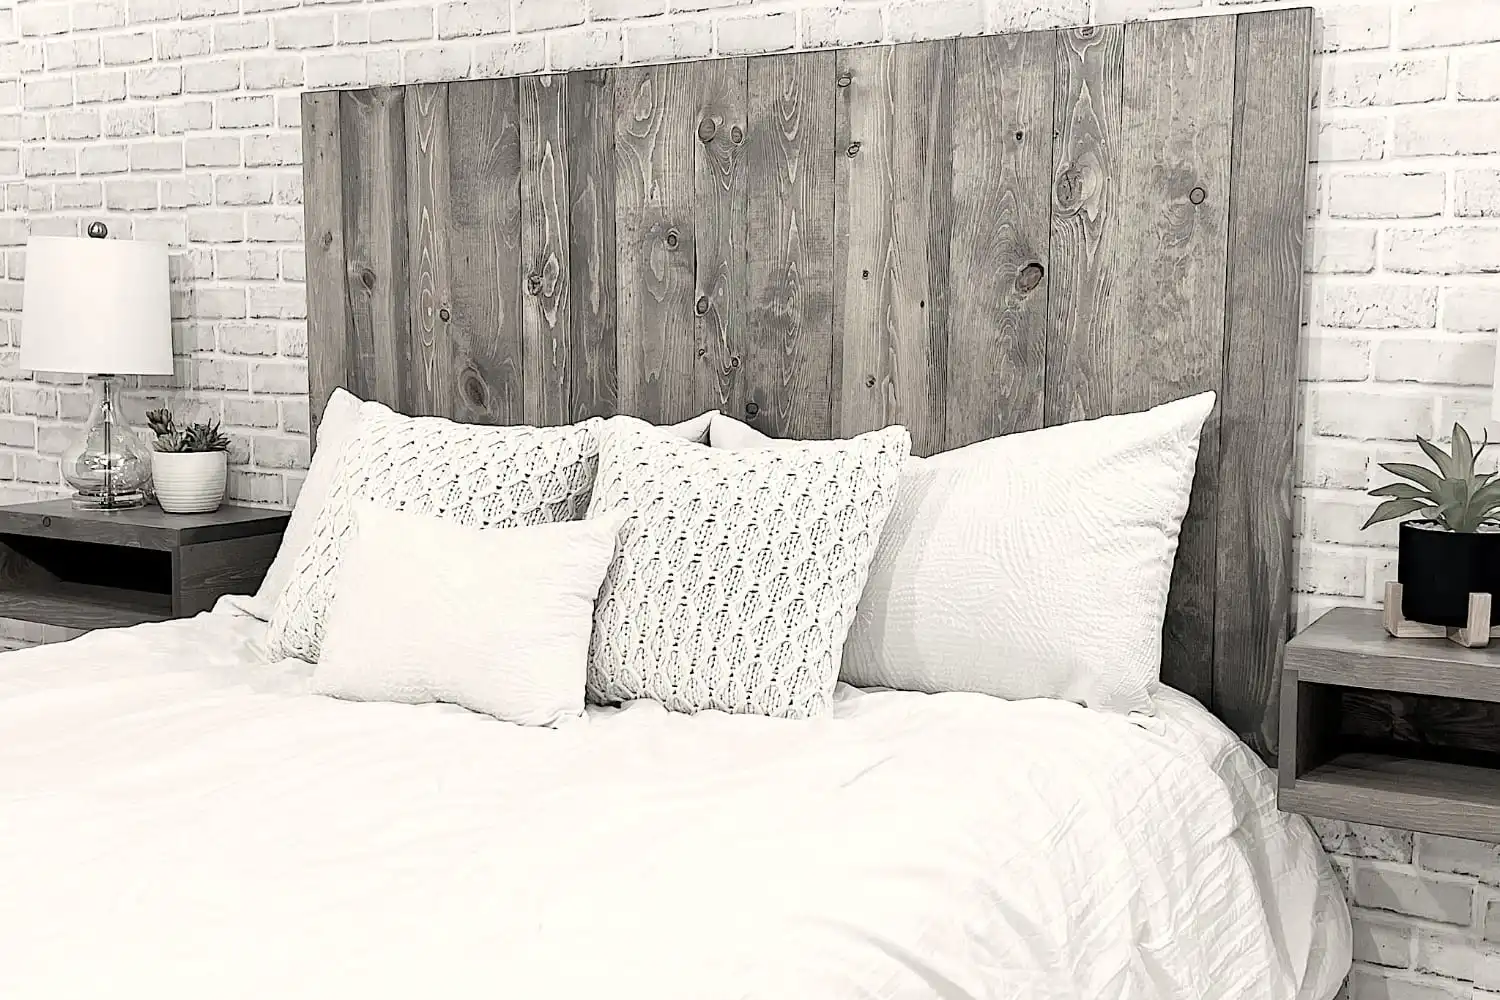 Image monochrome d'un lit soigneusement fait avec une tête de lit en bois rustique, une literie blanche et des oreillers assortis.